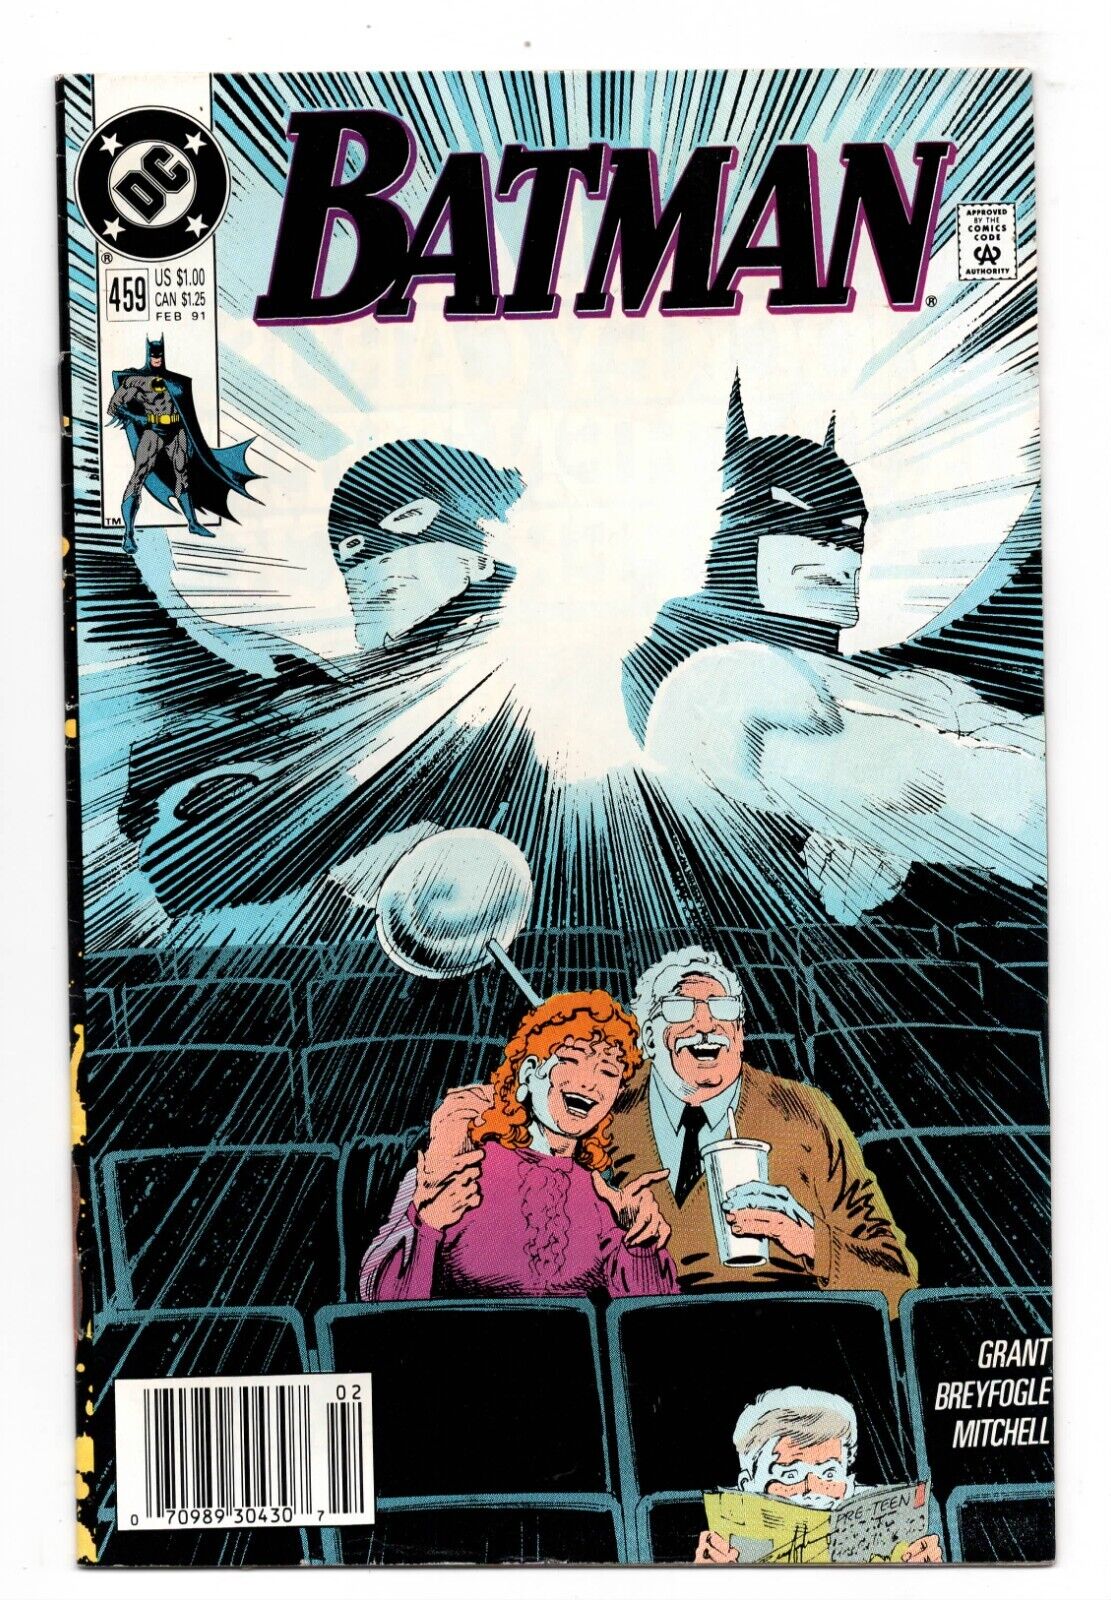 BATMAN #459 - FEB. 1991, DC COMICS